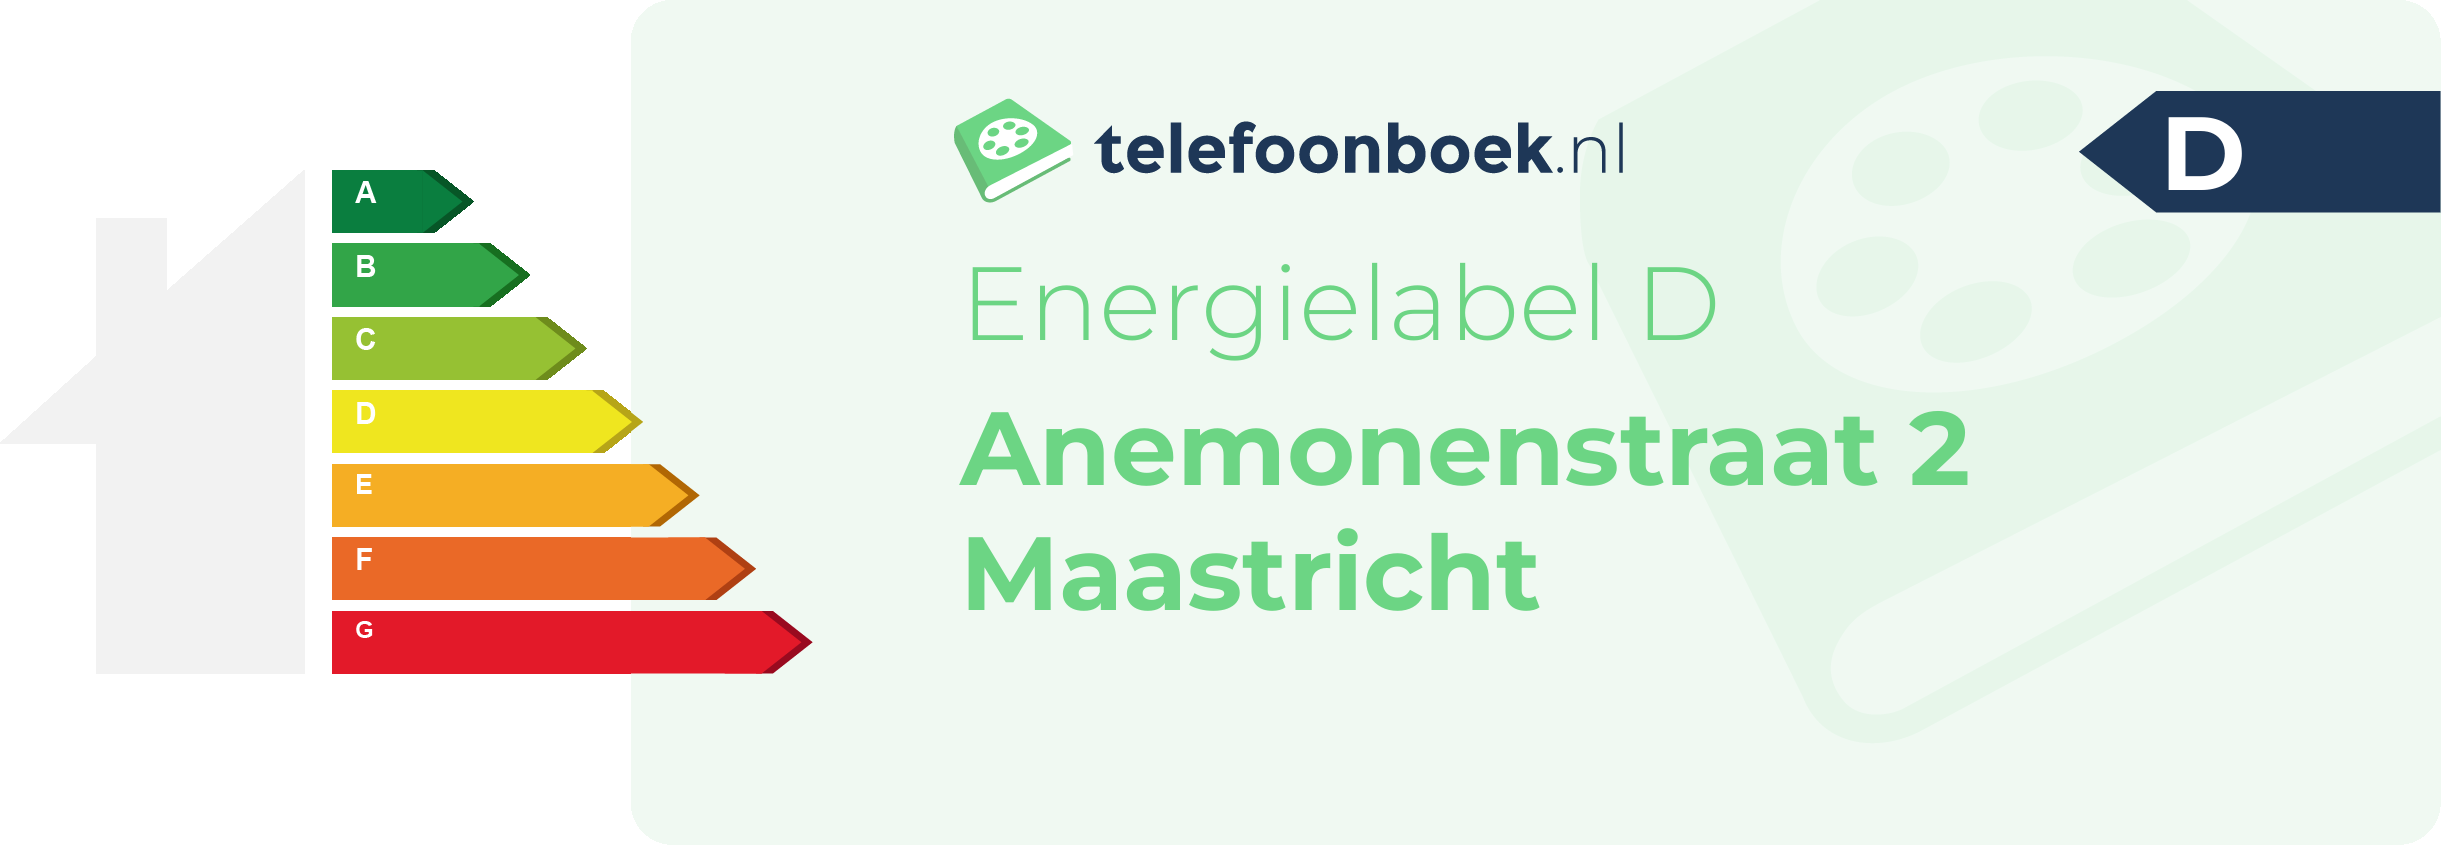 Energielabel Anemonenstraat 2 Maastricht